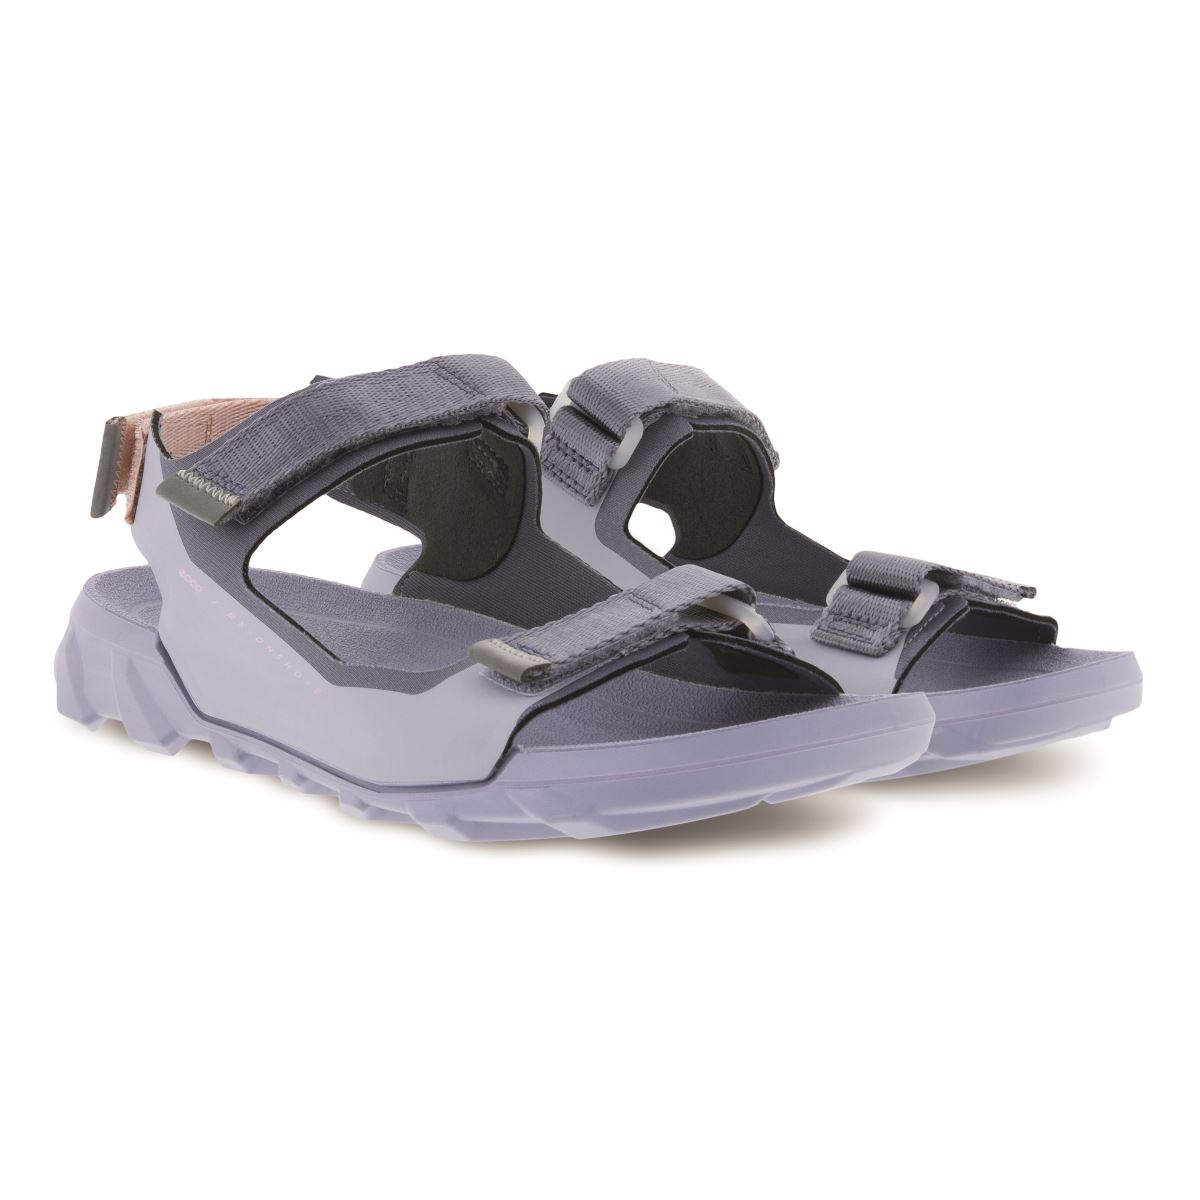 Ecco MX Onshore sandals